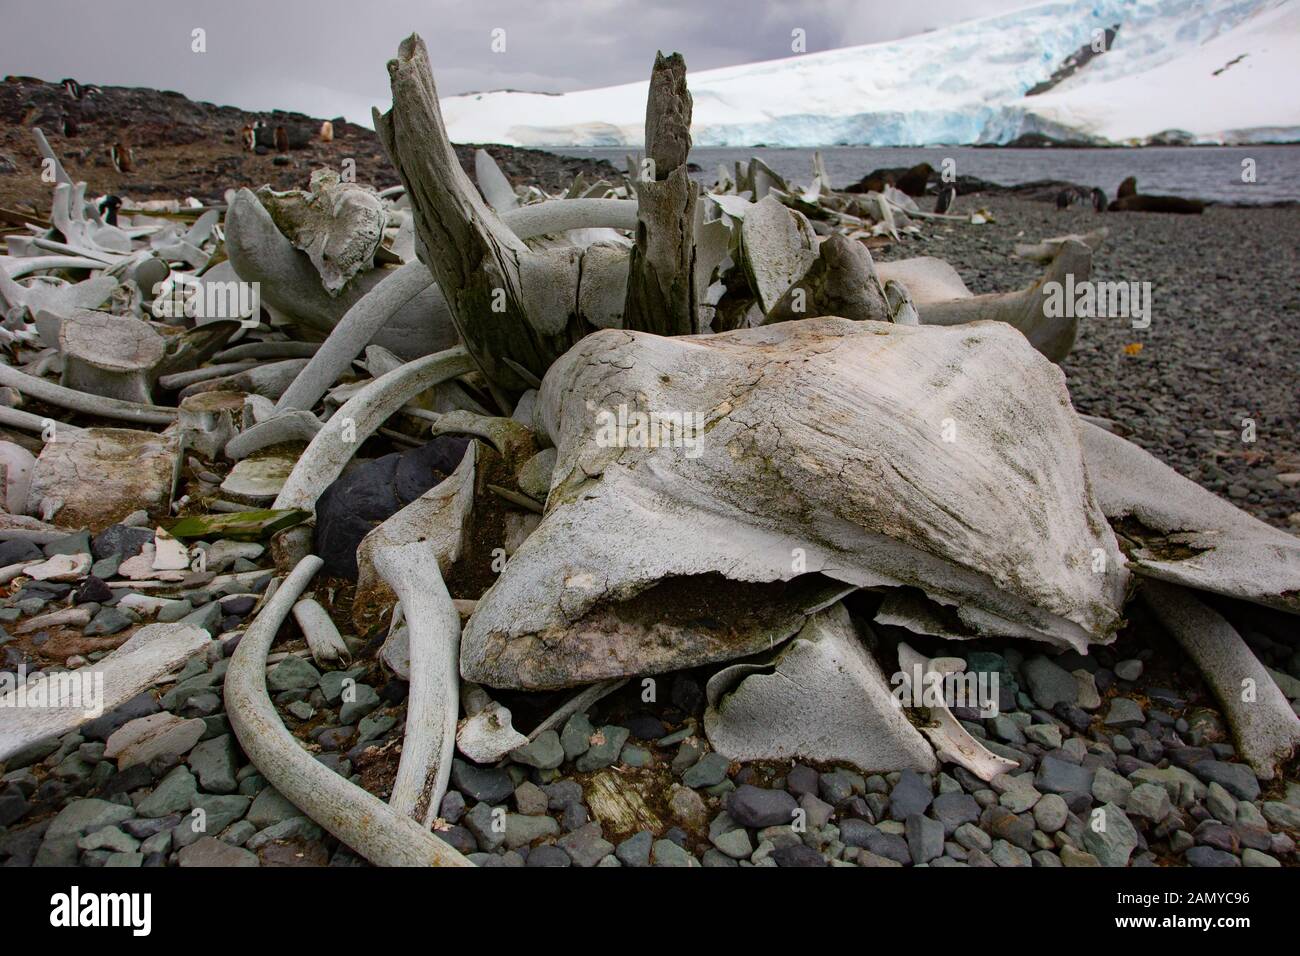 Des squelettes de baleines abattues au cours du siècle dernier. Photographié dans l'Antarctique Banque D'Images